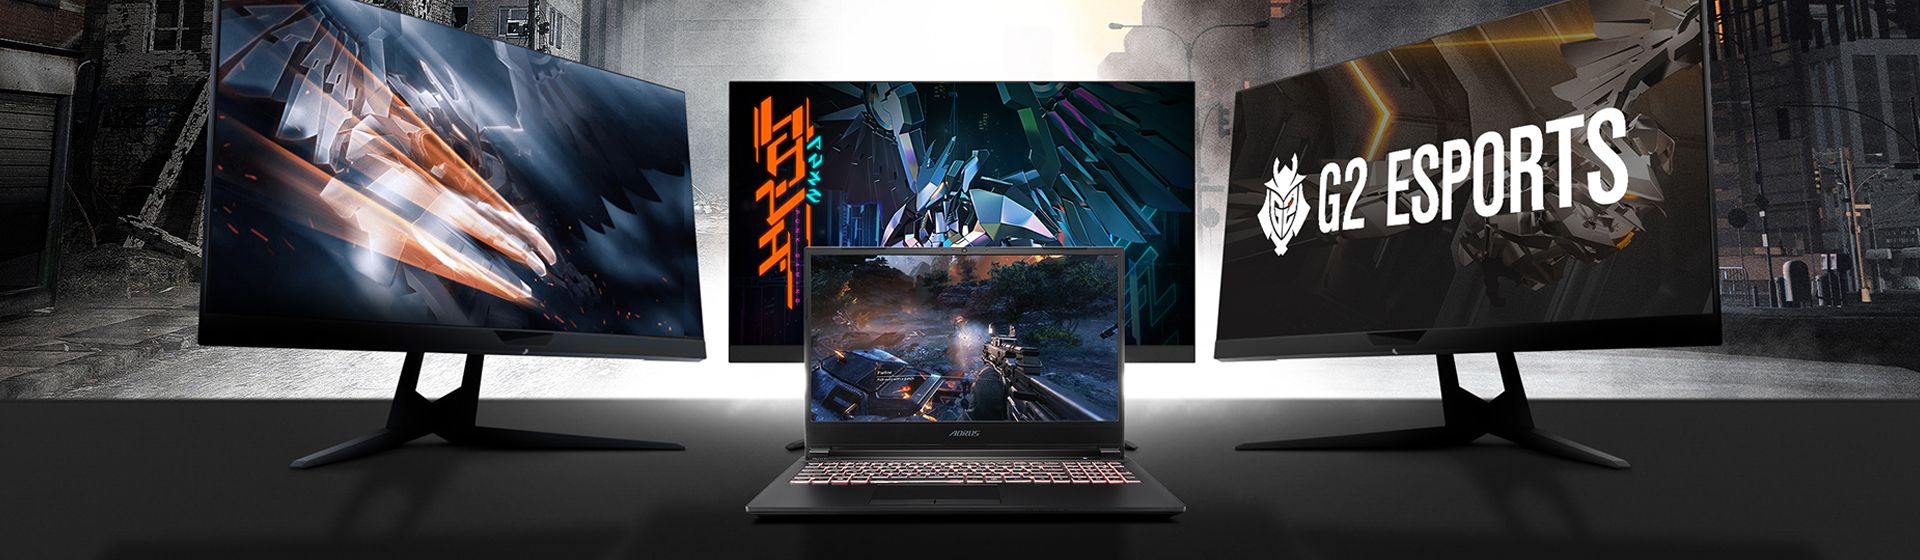 Gigabyte lança notebooks gamer Aorus com RTX Super e teclado mecânico